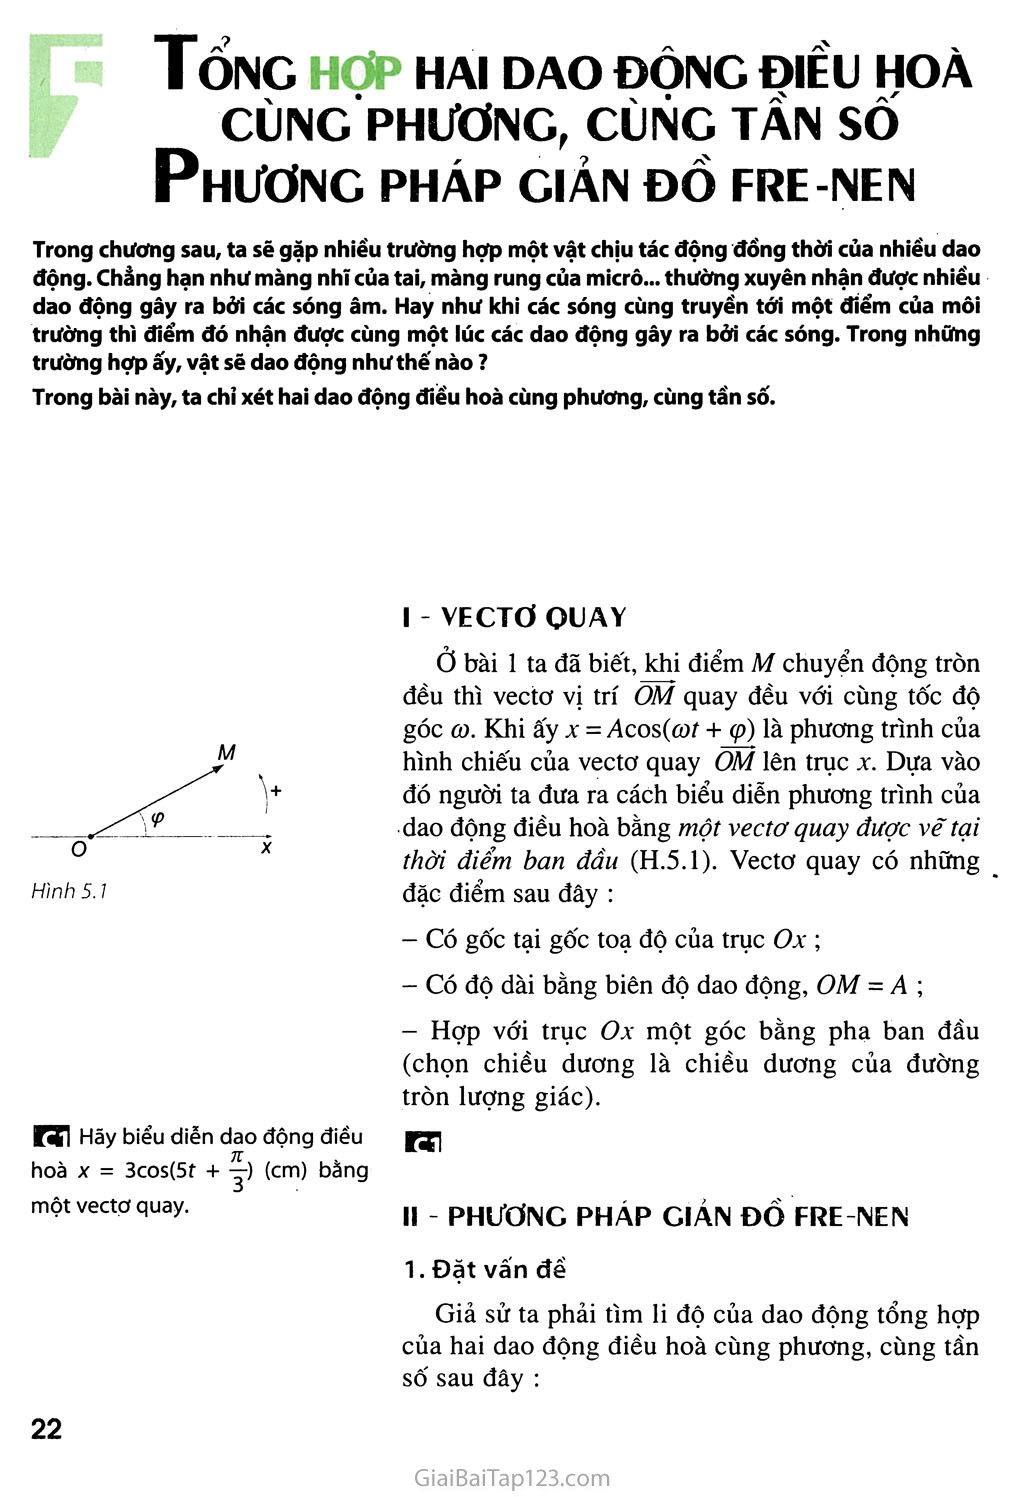 Bài 5. Tổng hợp hai dao động điều hoà cùng phương, cùng tần số. Phương pháp giản đồ Fre-nen trang 1